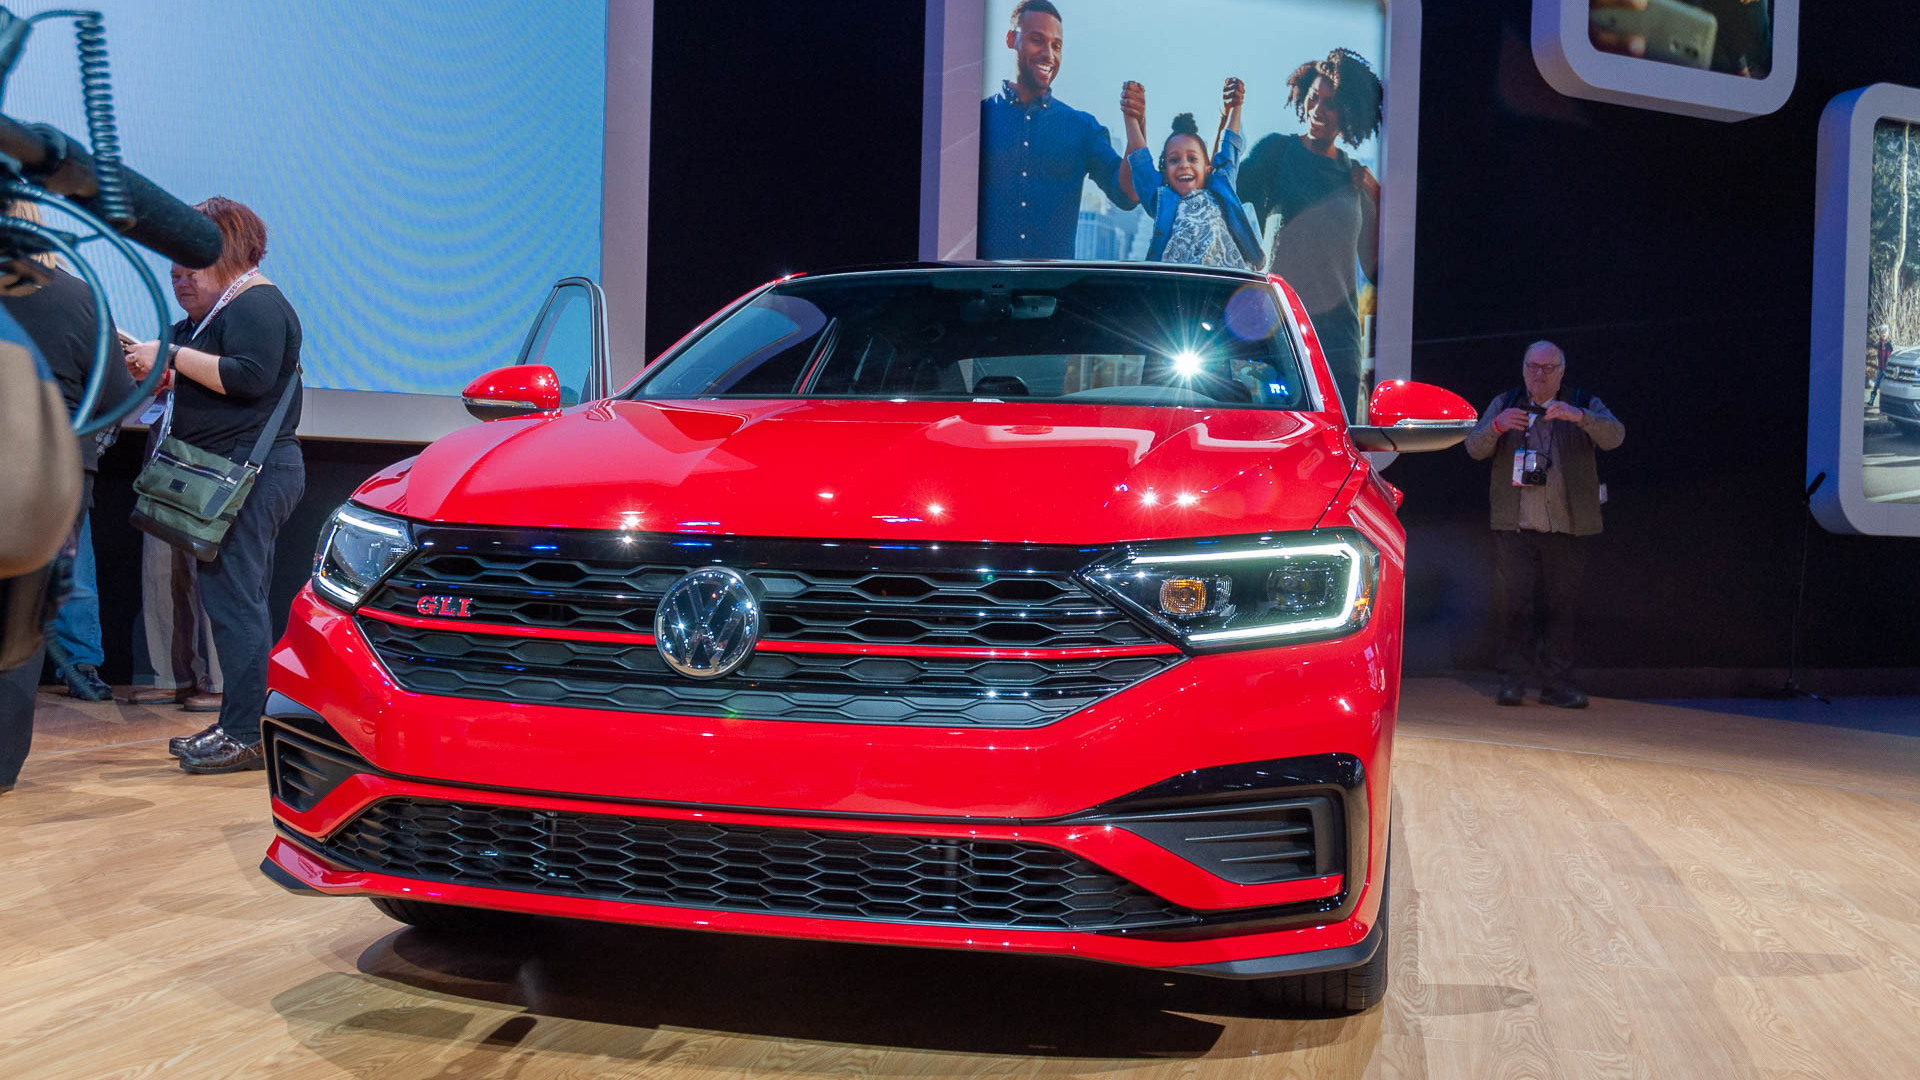 2019 Volkswagen Jetta GLI, 2019 Chicago Auto Show